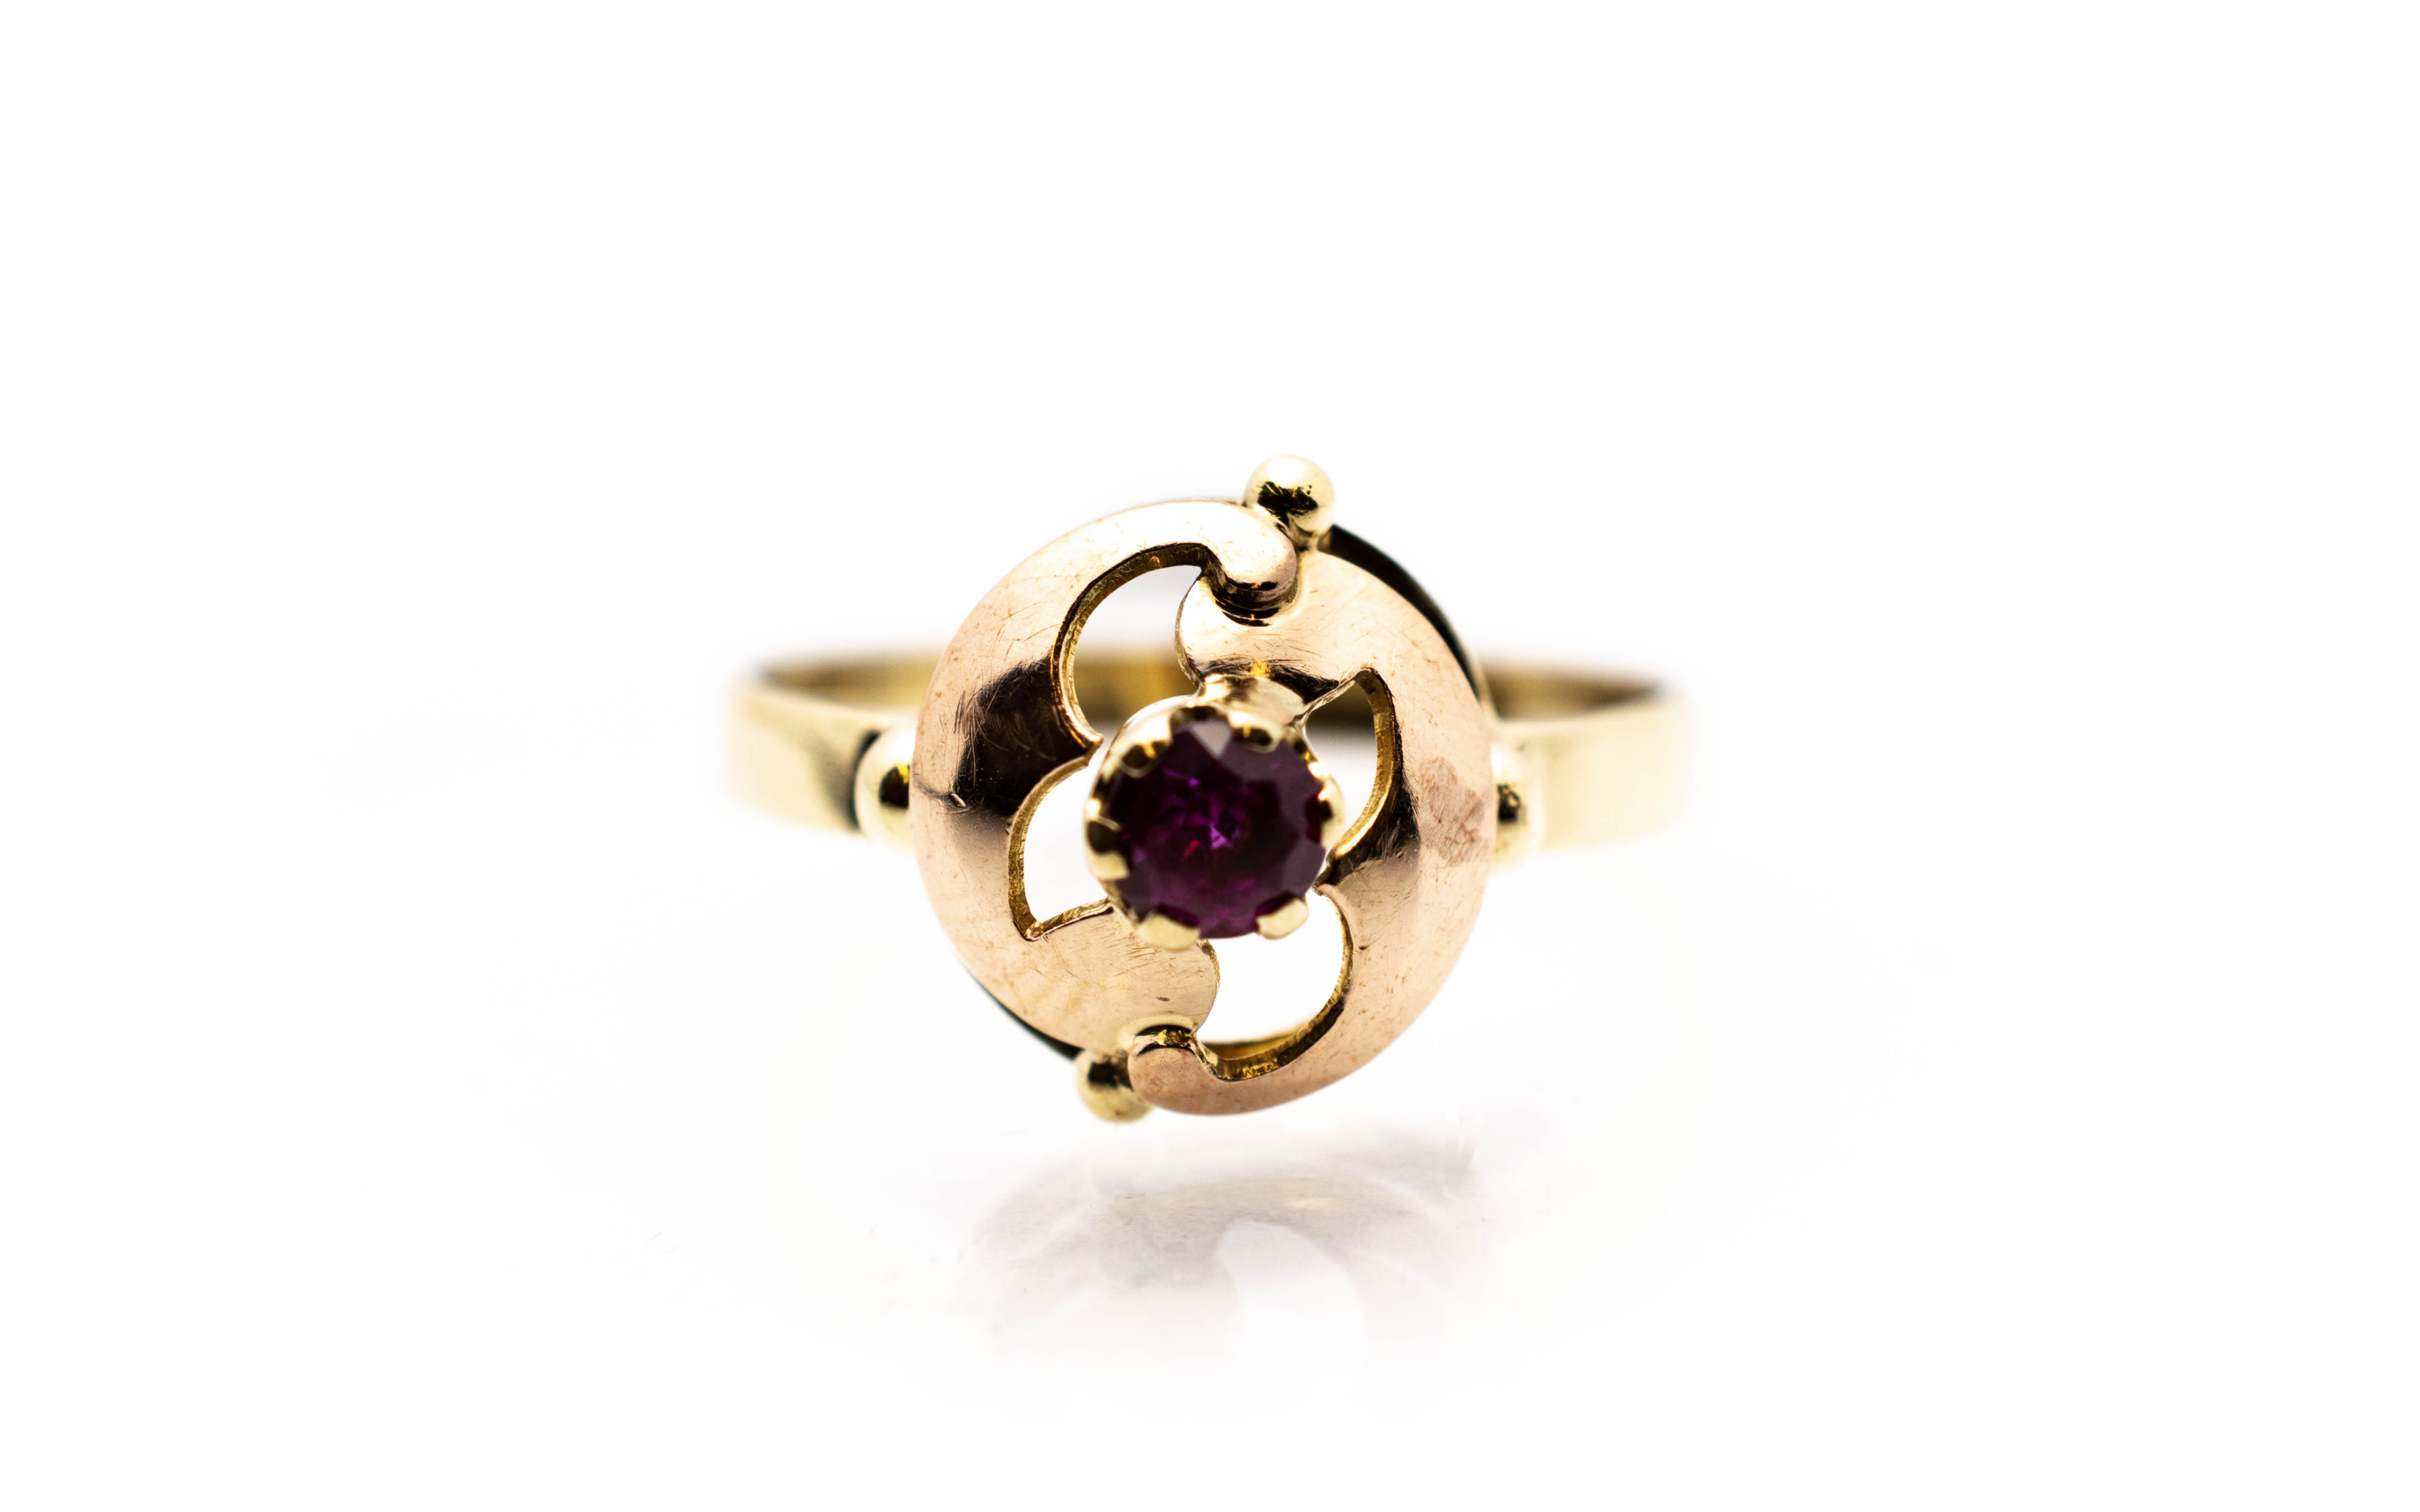 Zlatý prsten s červeným kamenem - rubín, vel. 57